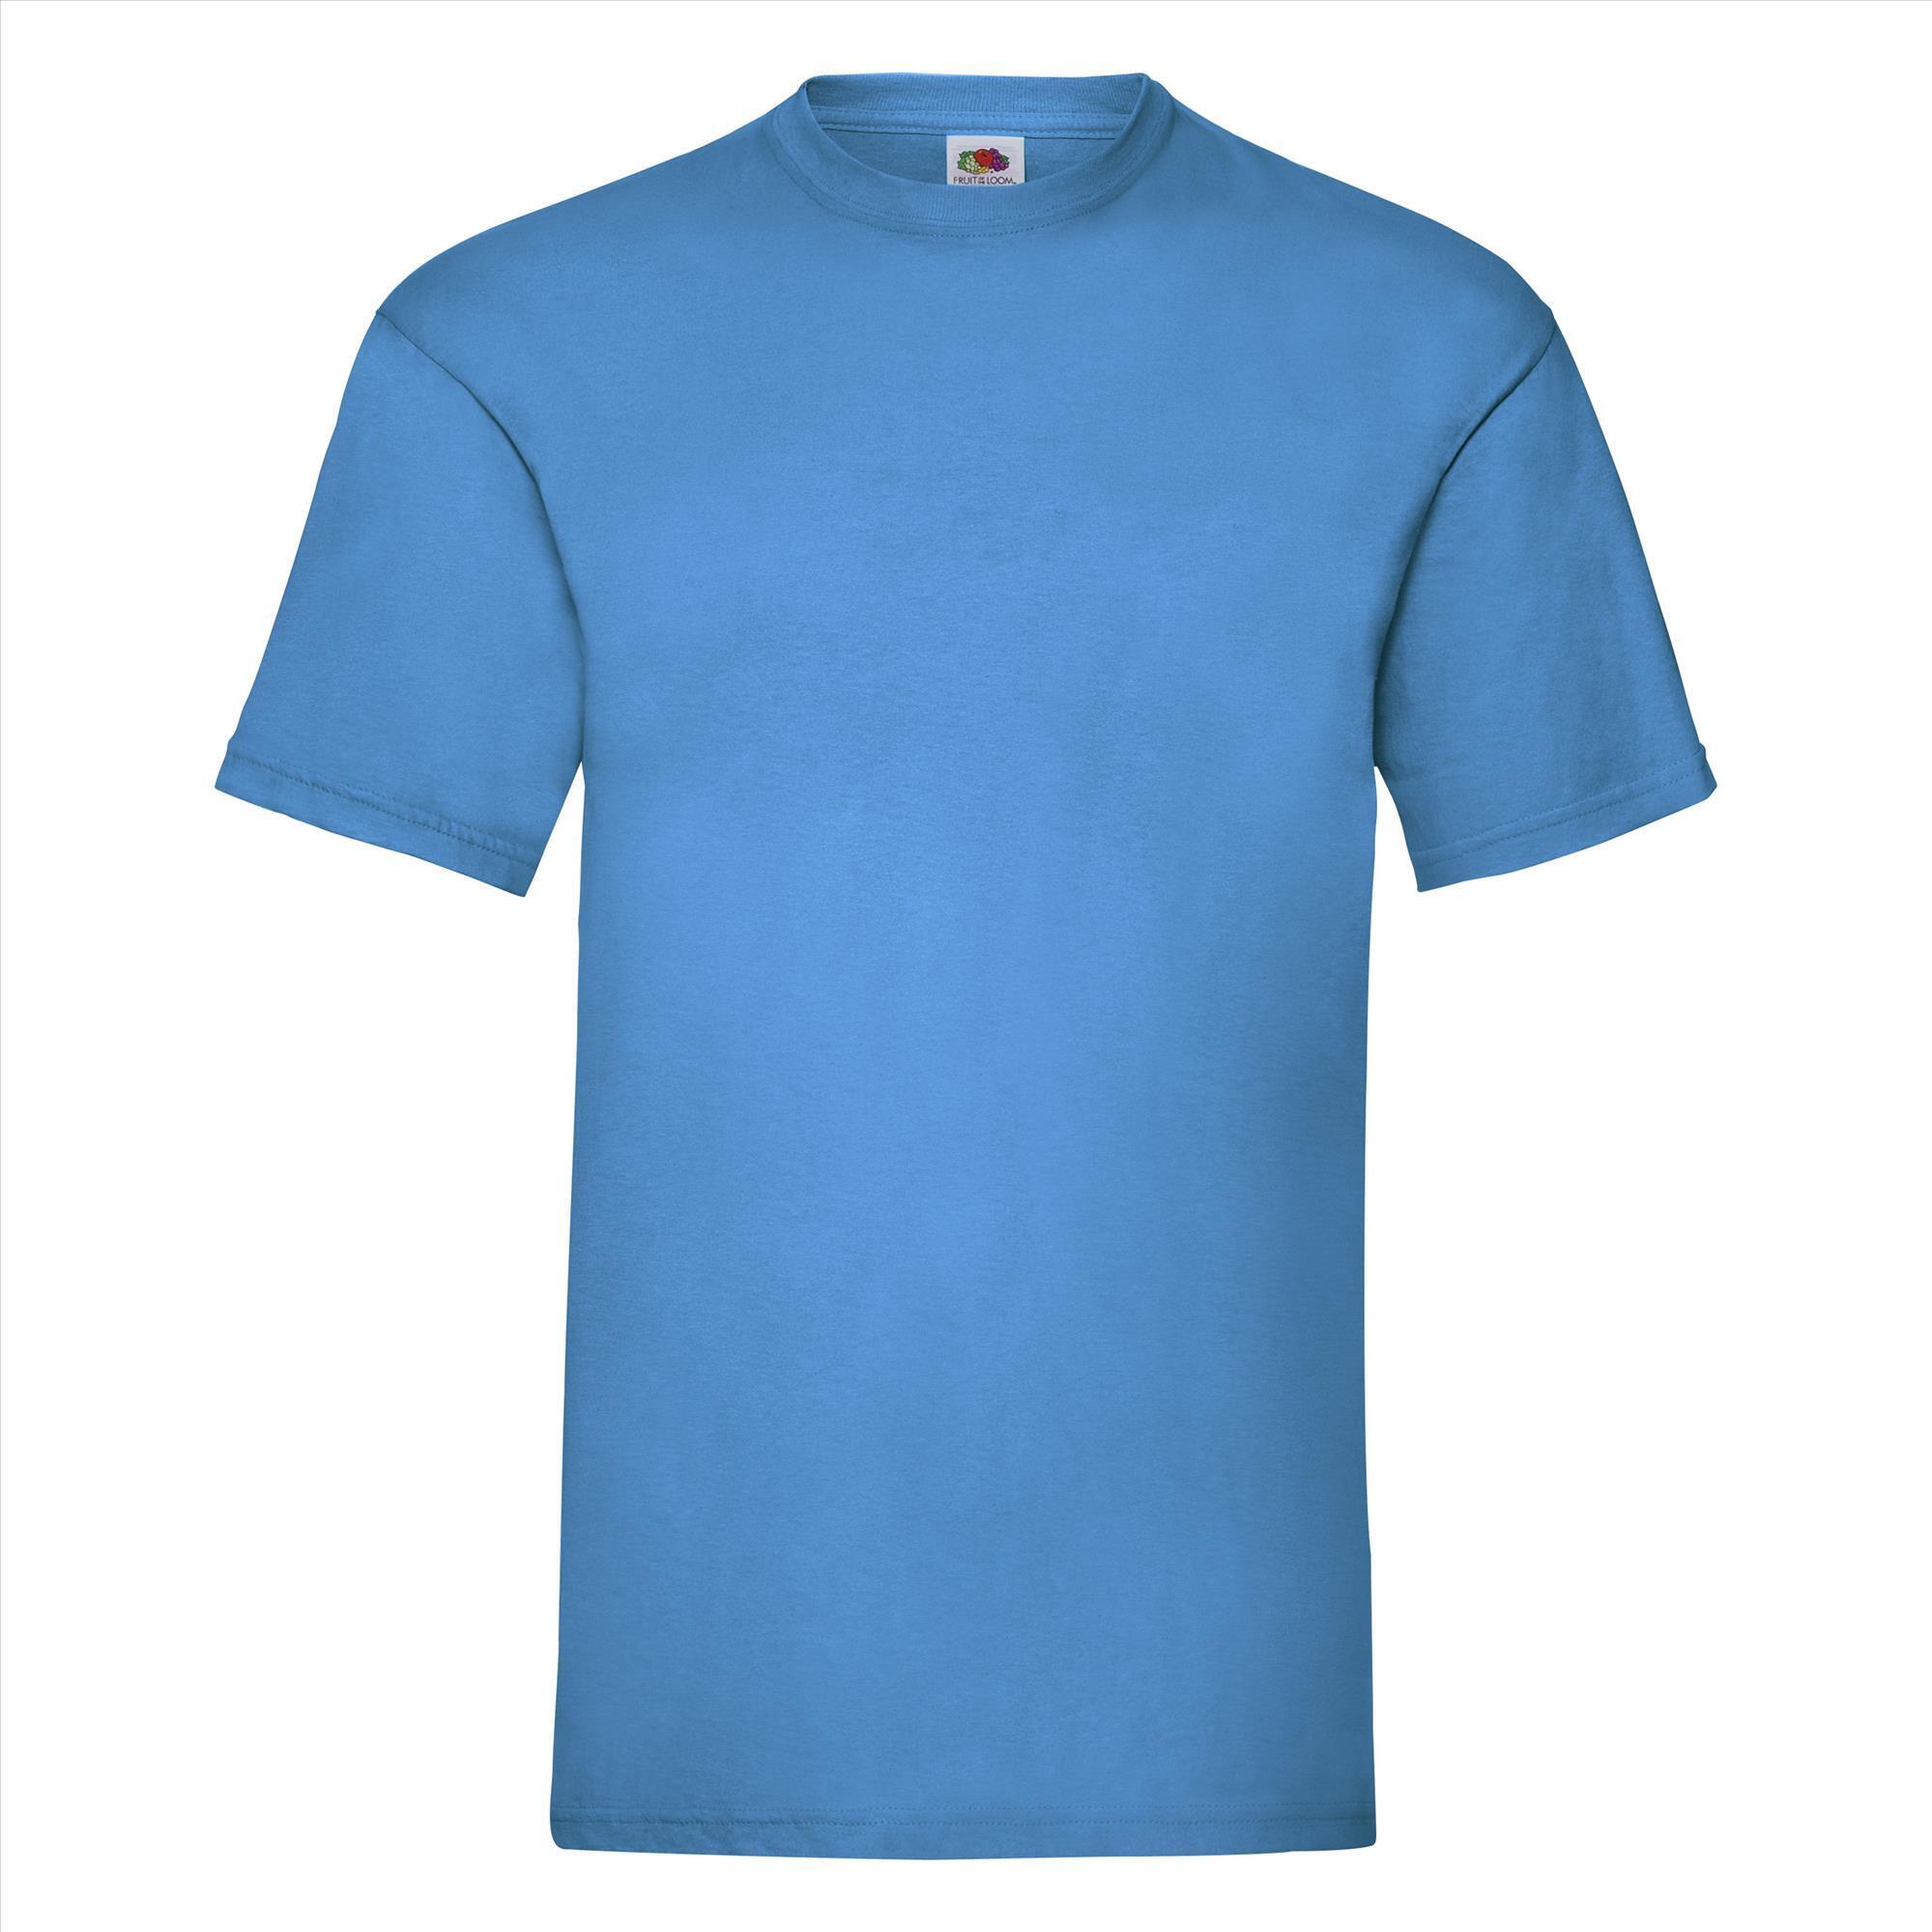 T-shirt voor mannen azuur blauw personaliseren T-shirt bedrukken